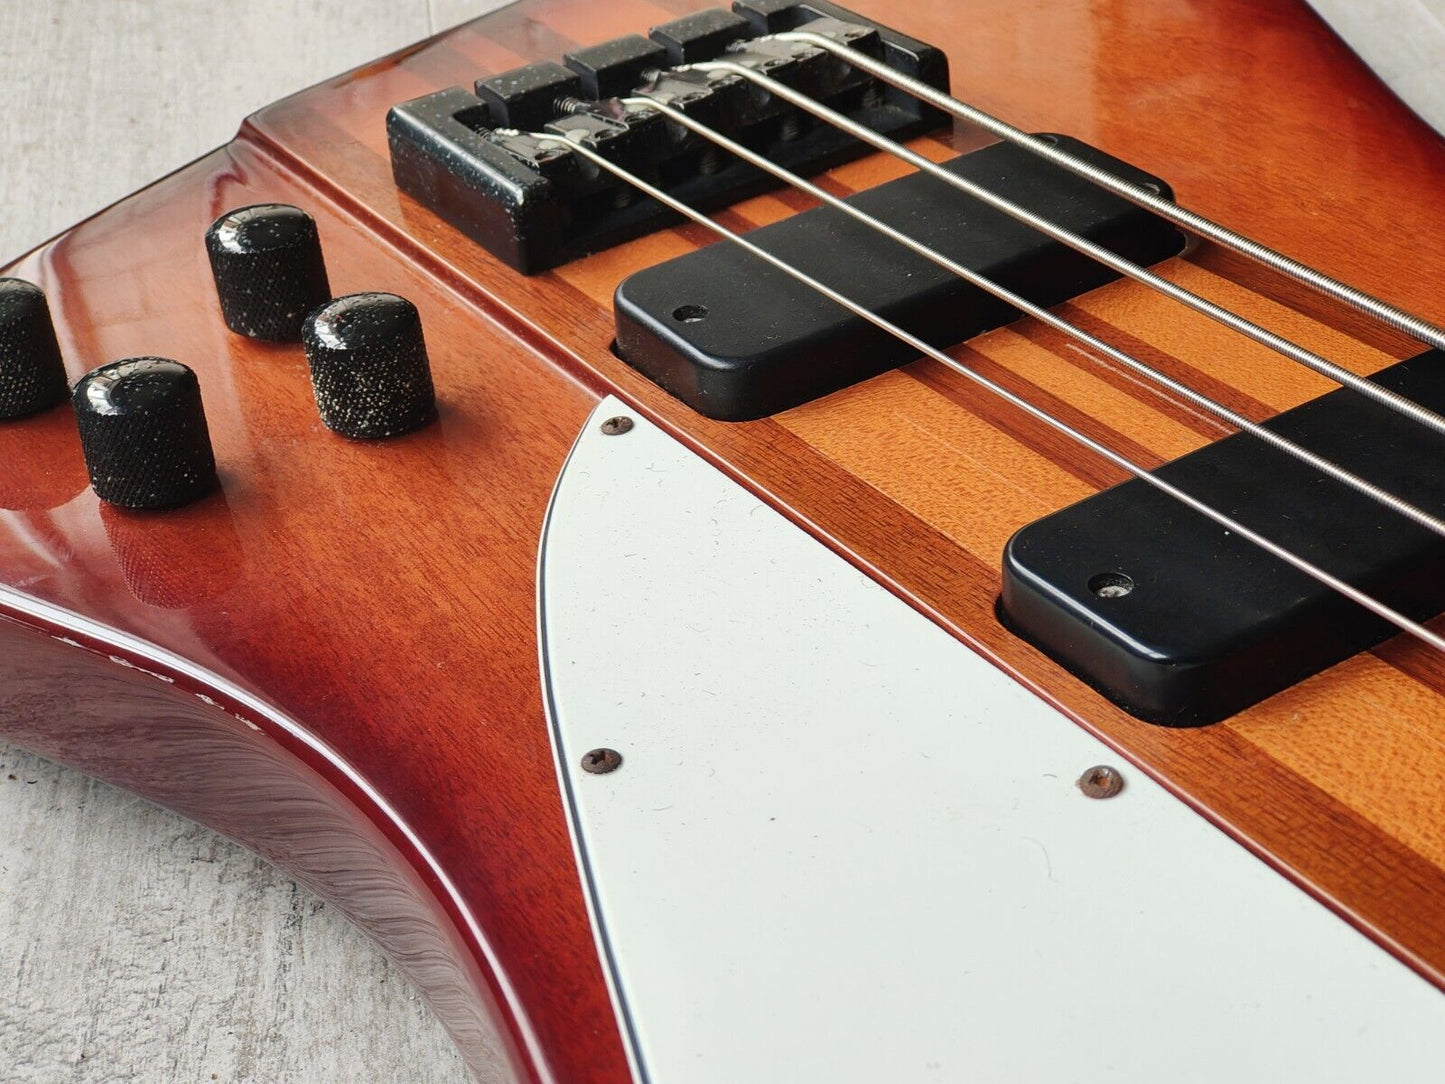 2009 Epiphone Thunderbird Pro IV Bass